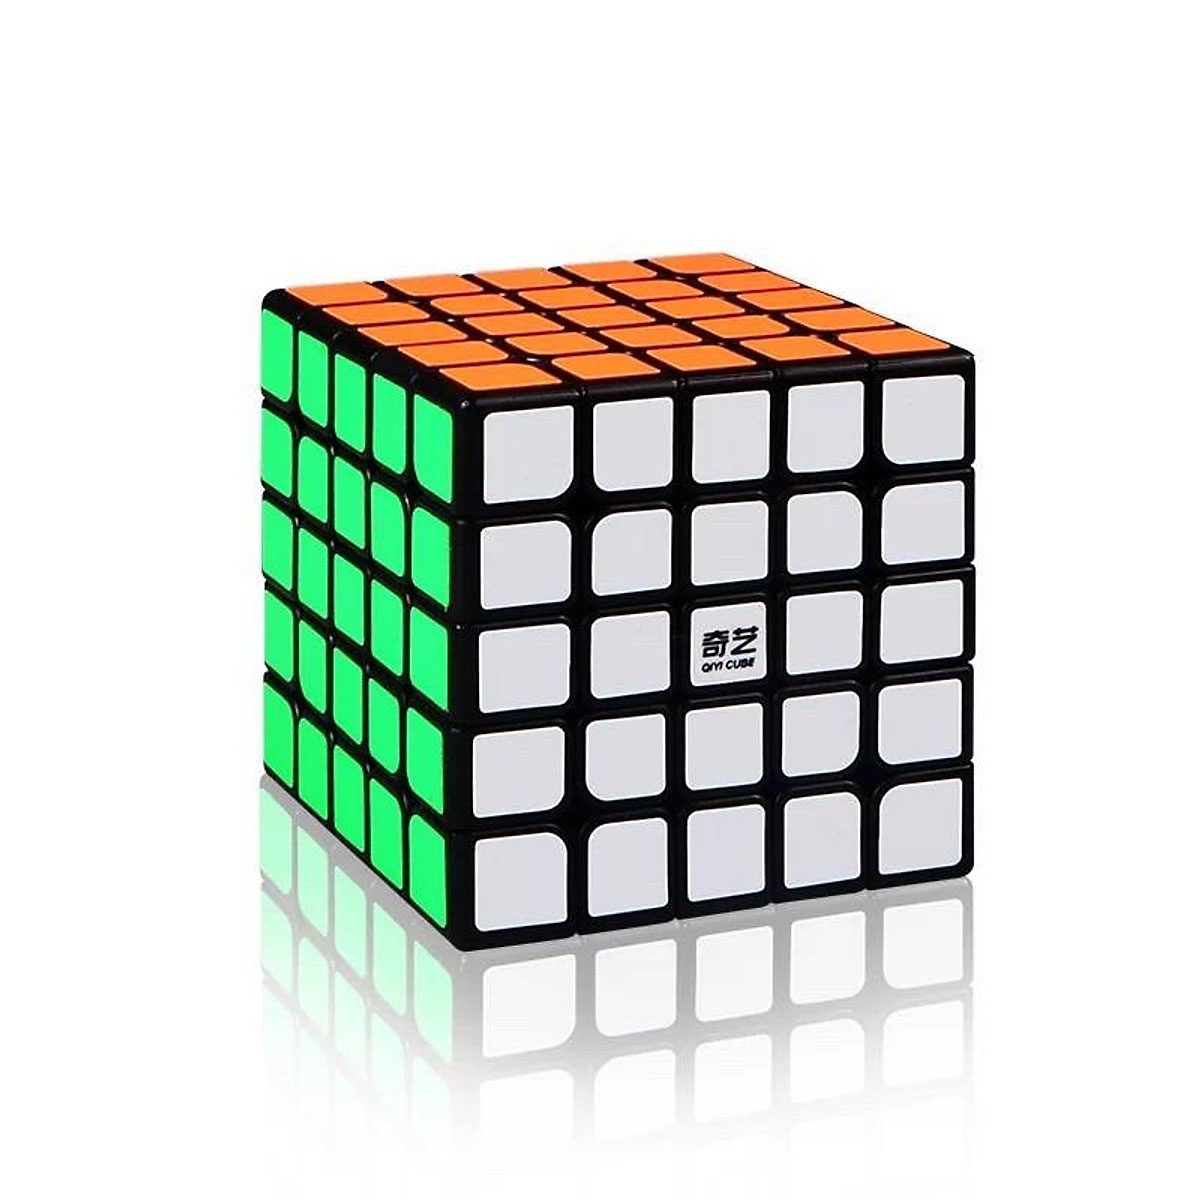 Rubik 5x5 viền đen cao cấp - Tặng kèm chân đế